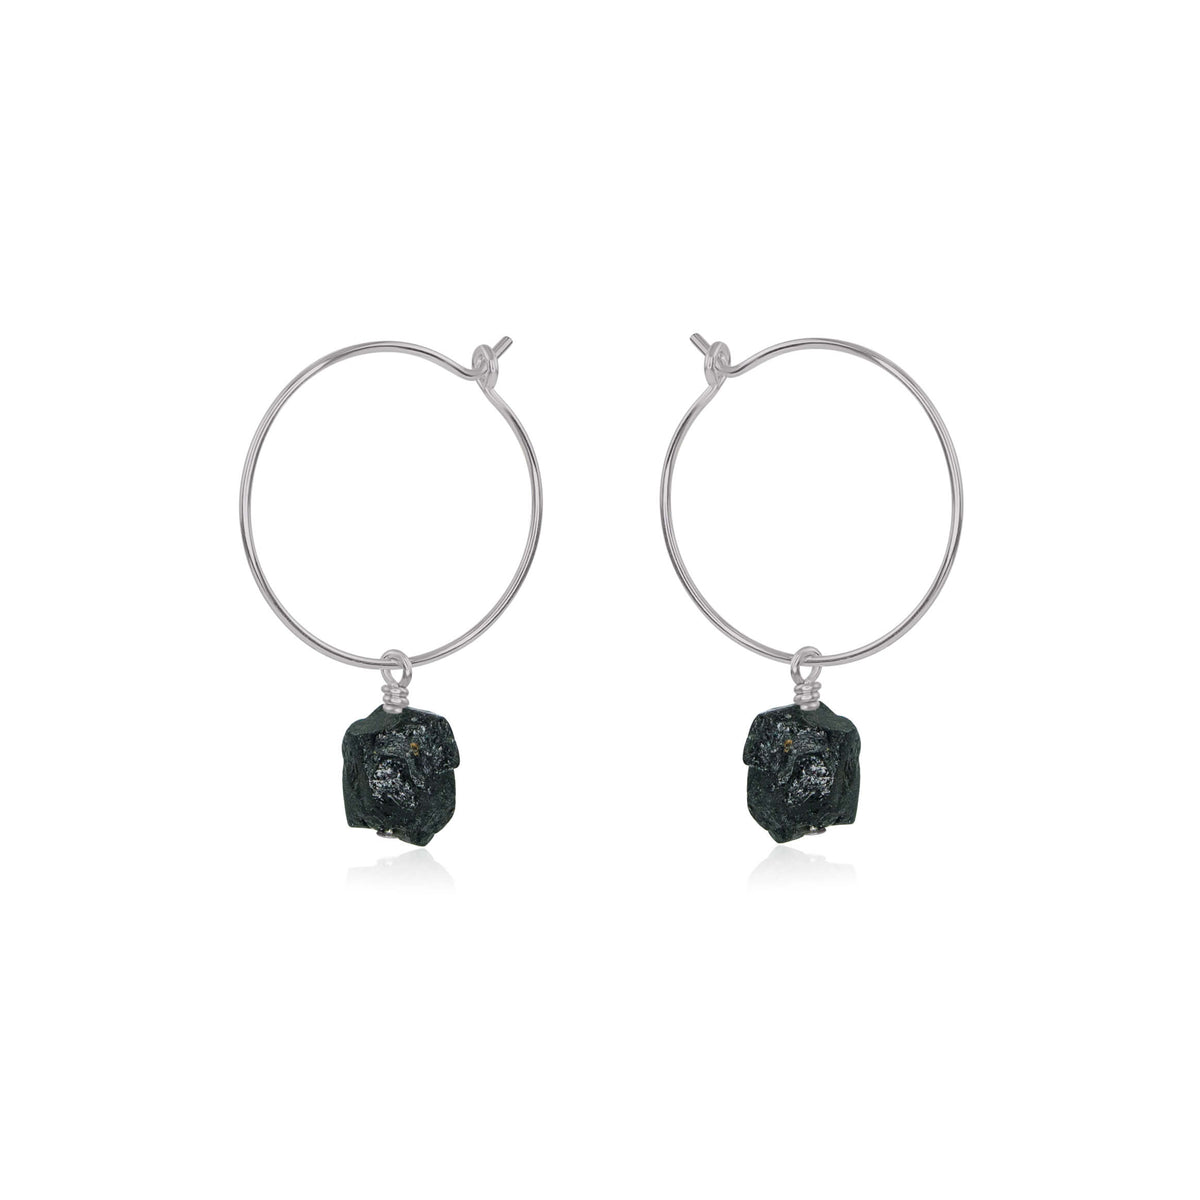 Raw Nugget Hoop Earrings - Black Tourmaline - Stainless Steel - Luna Tide Handmade Jewellery